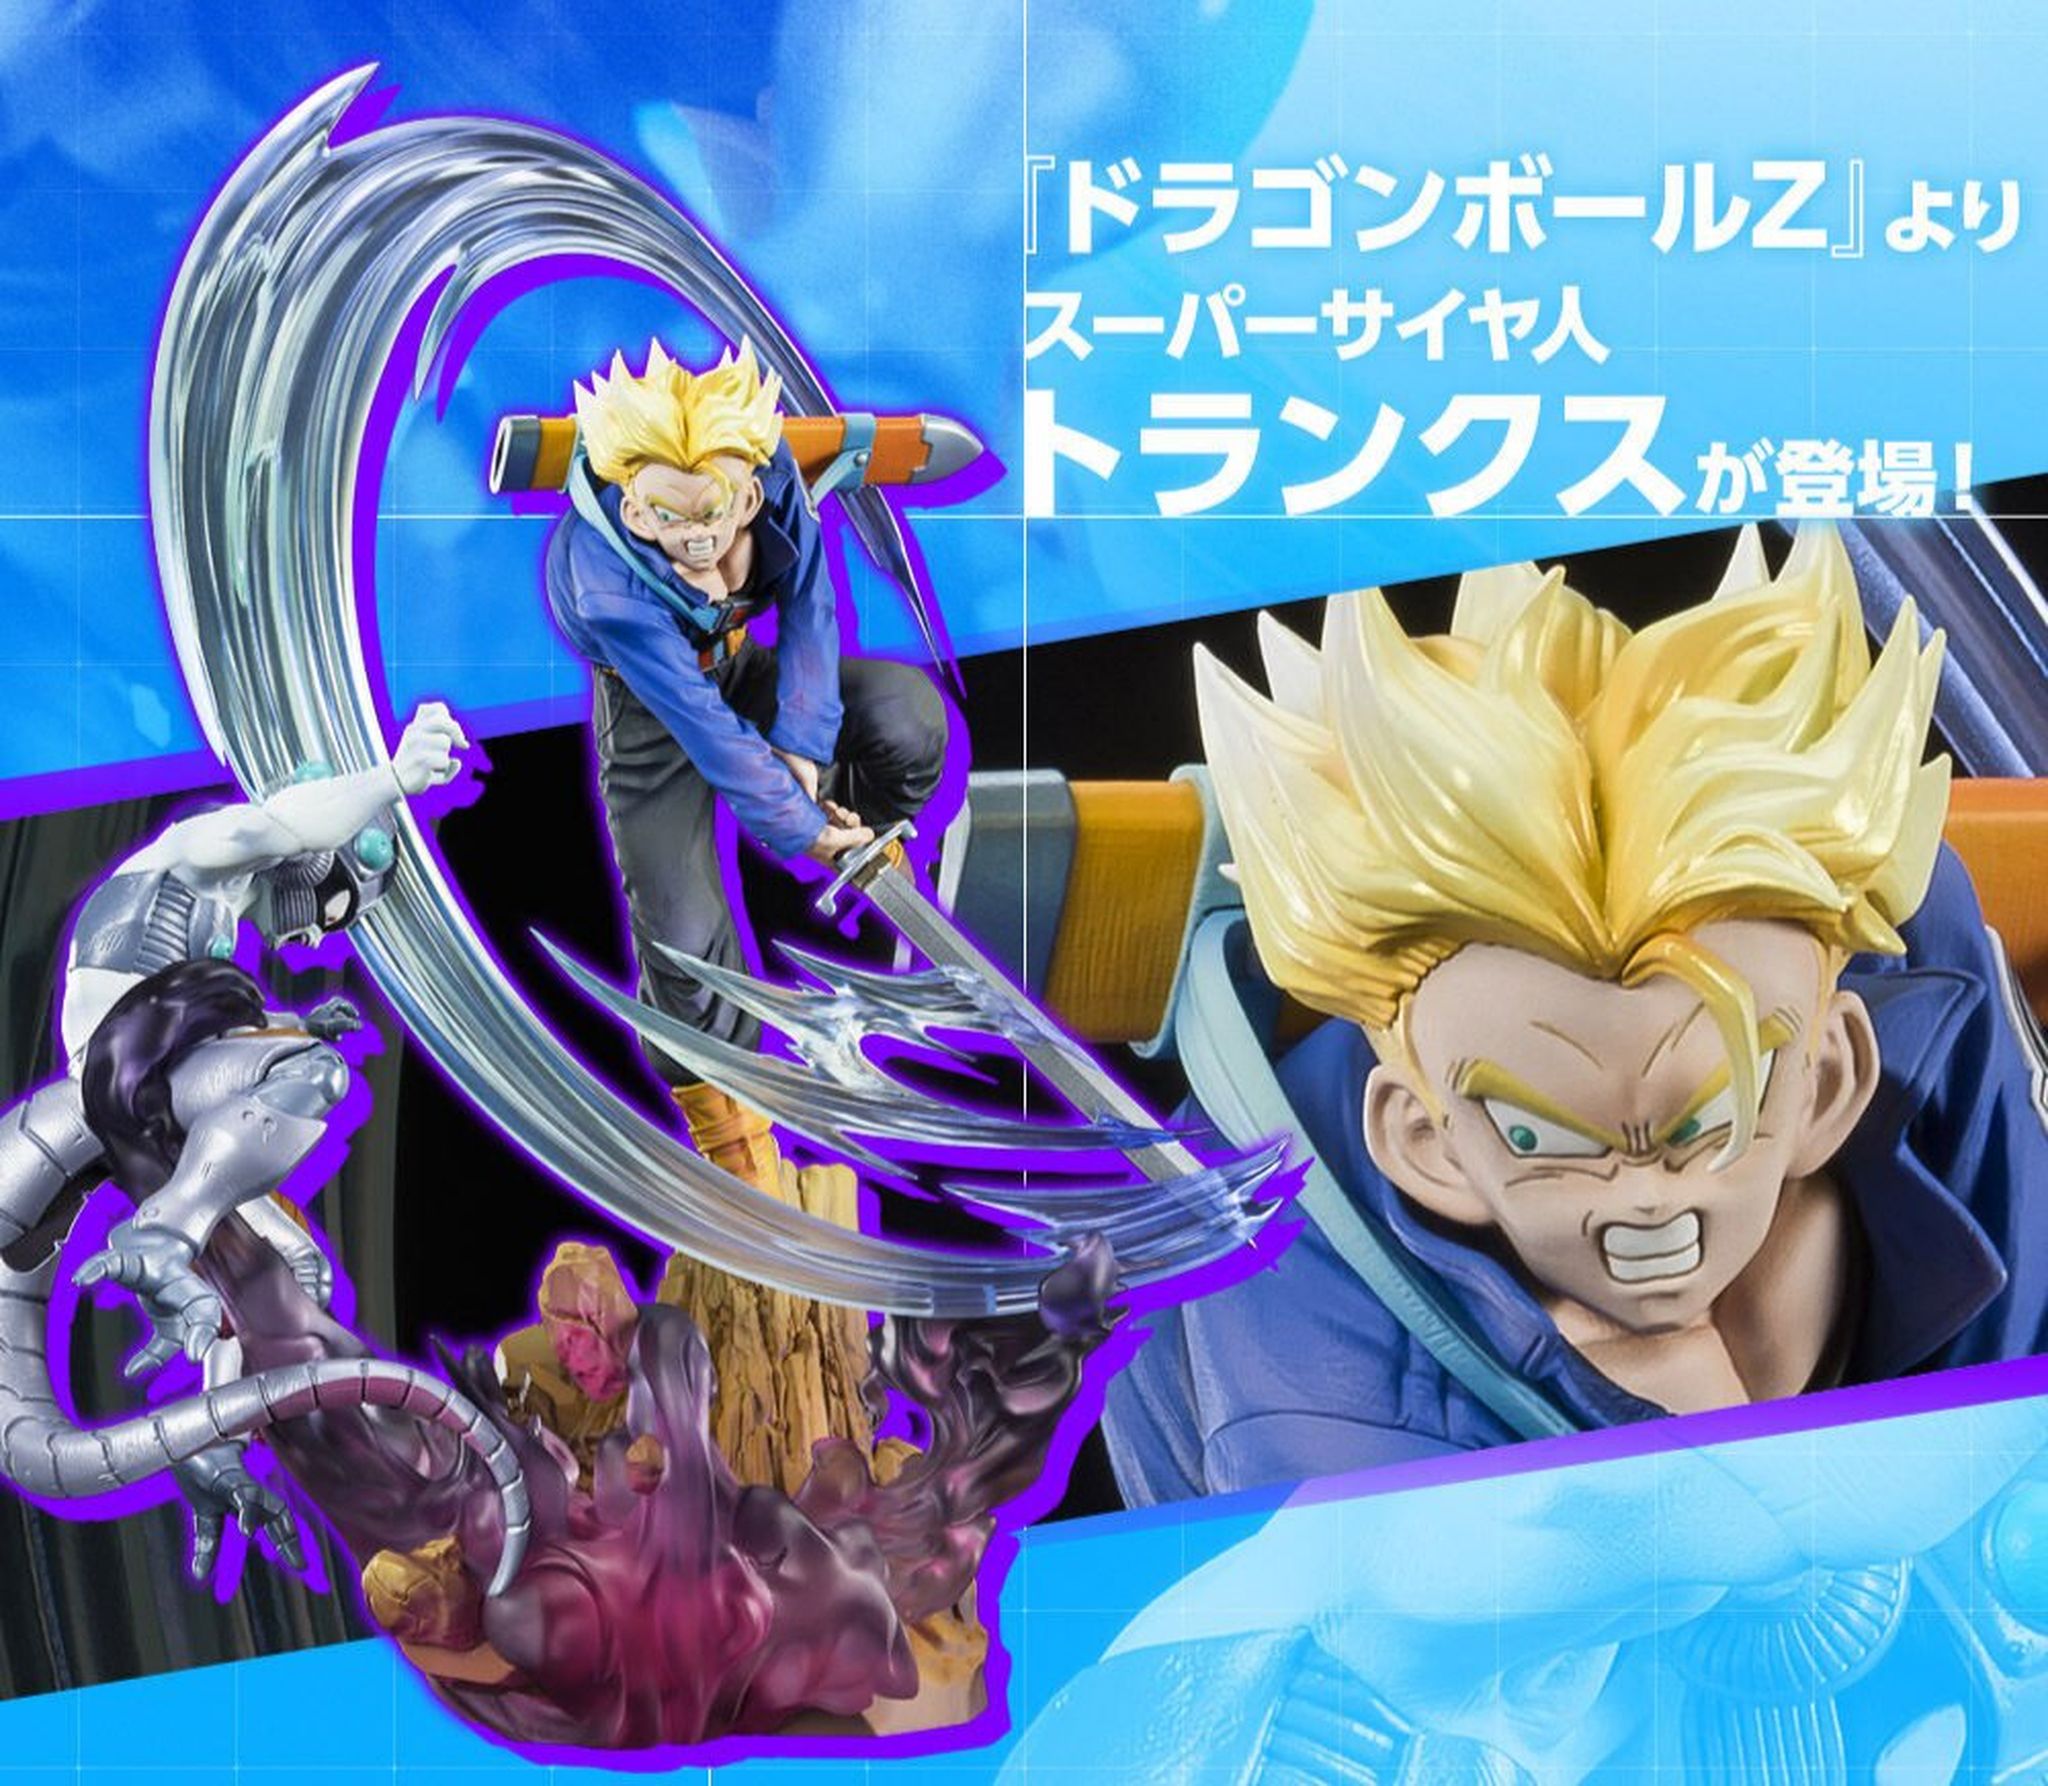 Dragon Ball Z - Así será la asombrosa figura de Trunks del futuro partiendo a Mecha Freezer en dos. ¿La mejor Figuarts Zero de Tamashii Nations?